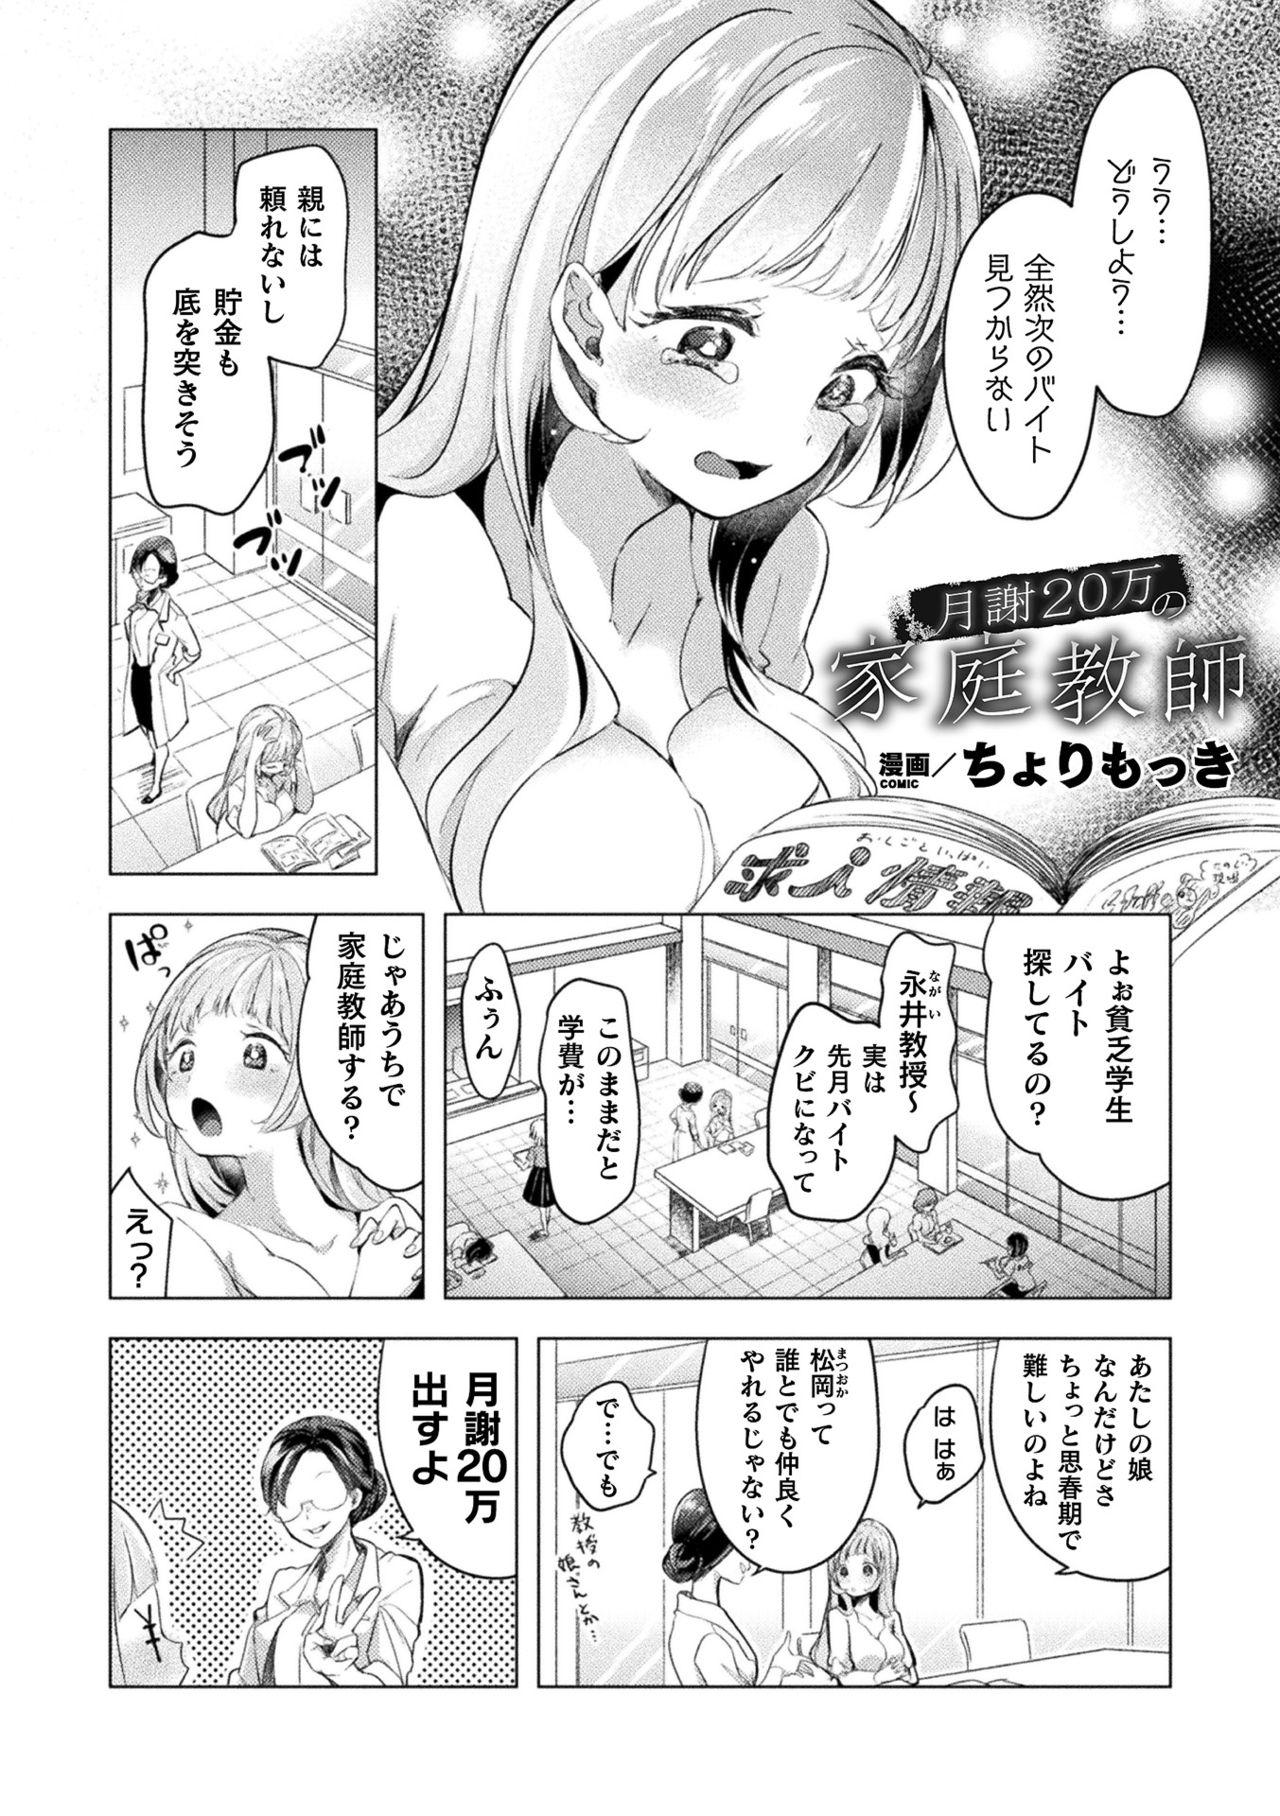 2D Comic Magazine Mesugaki vs Yasashii Onee-san Vol. 1 27